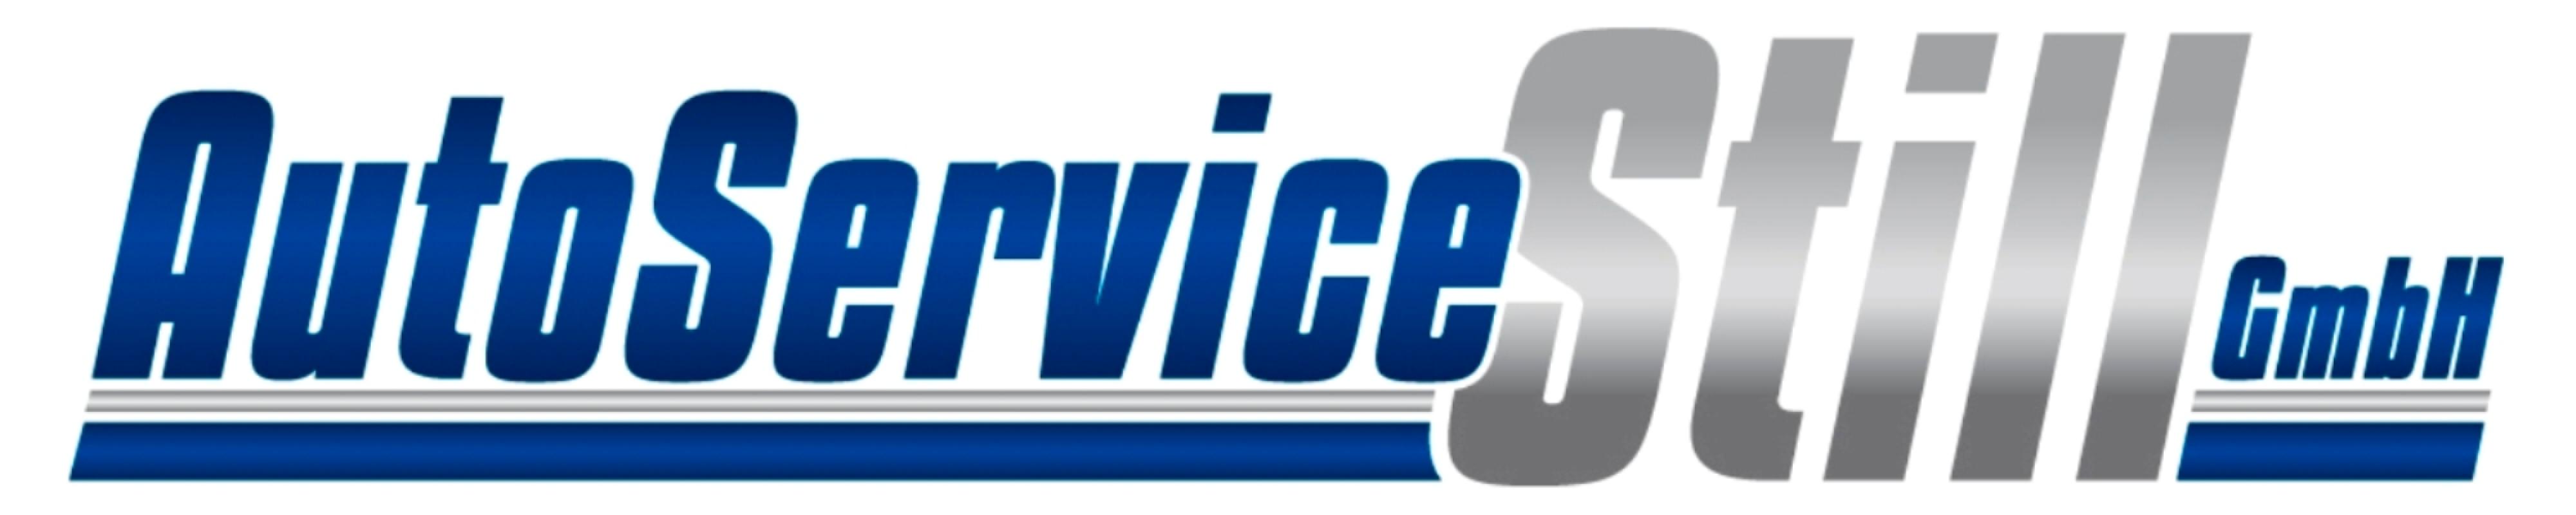 Auto Service Still GmbH